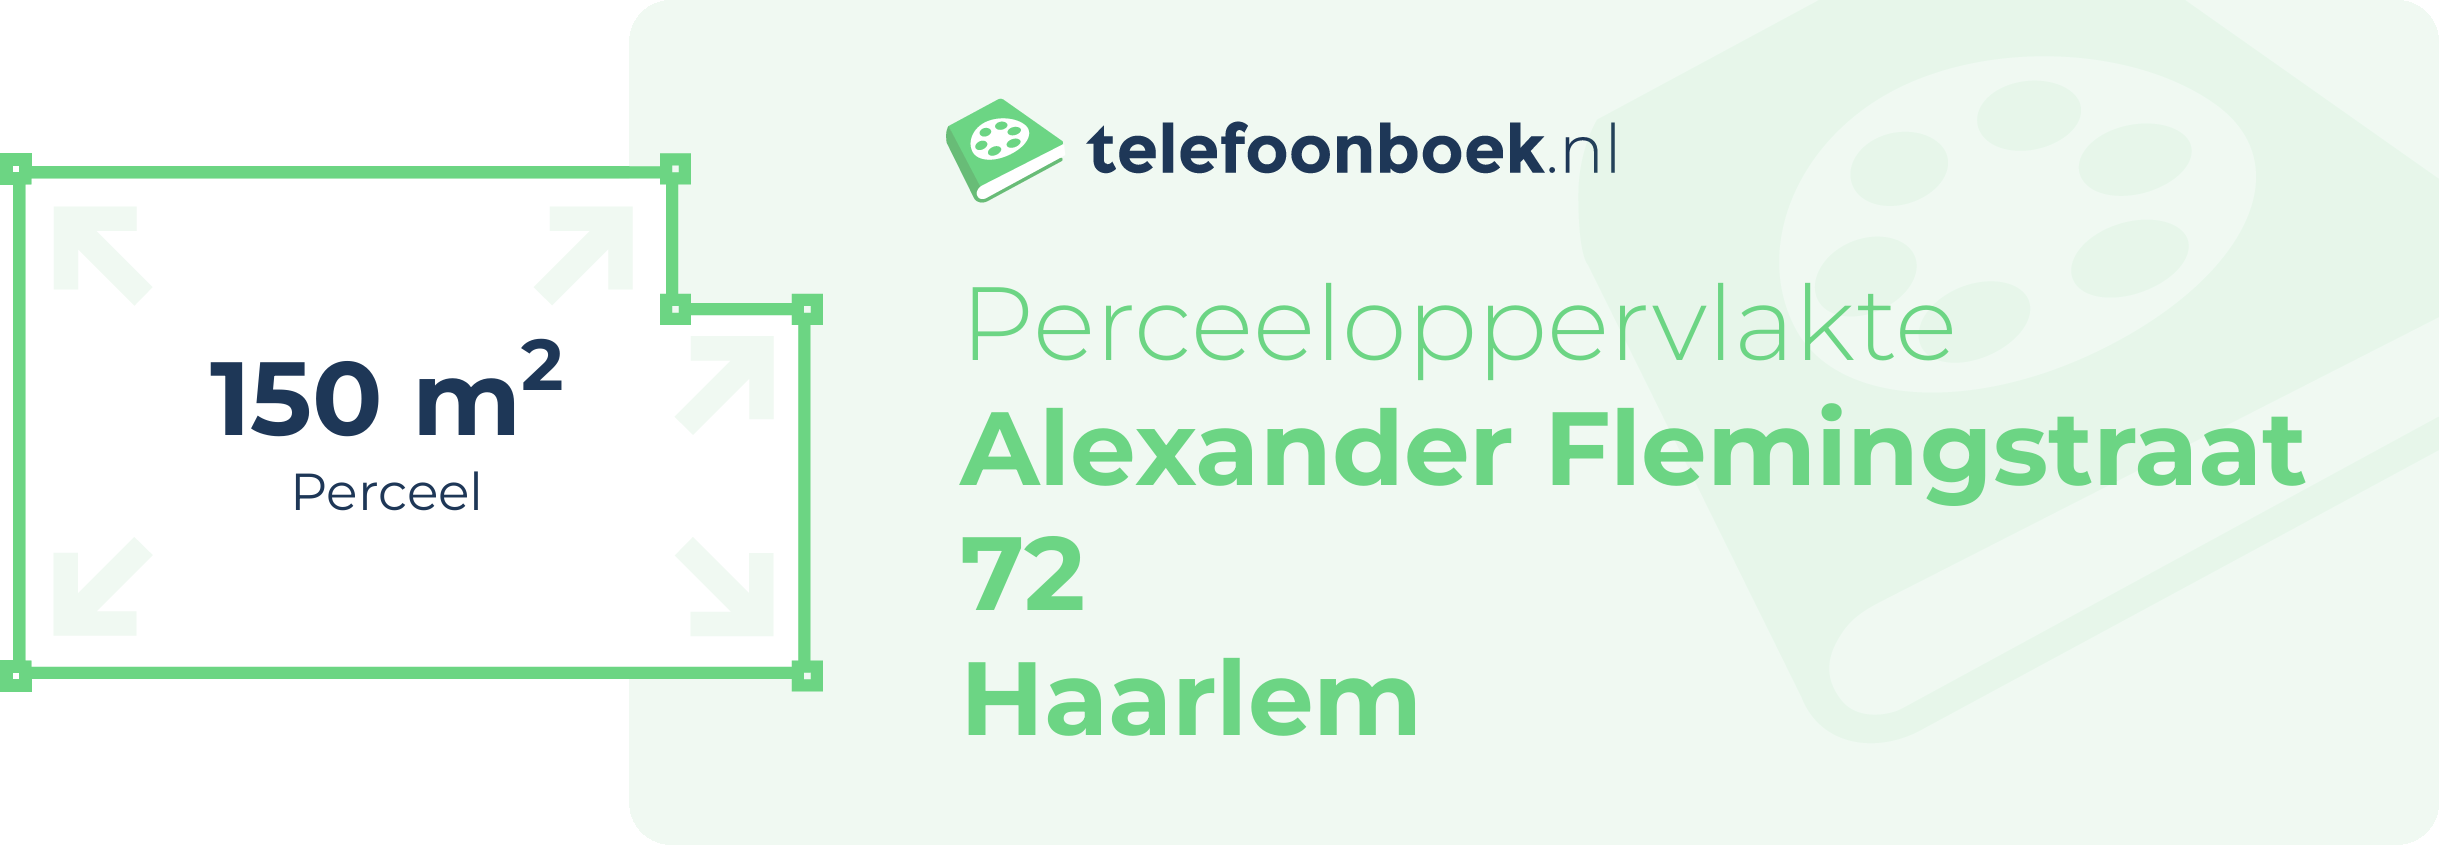 Perceeloppervlakte Alexander Flemingstraat 72 Haarlem